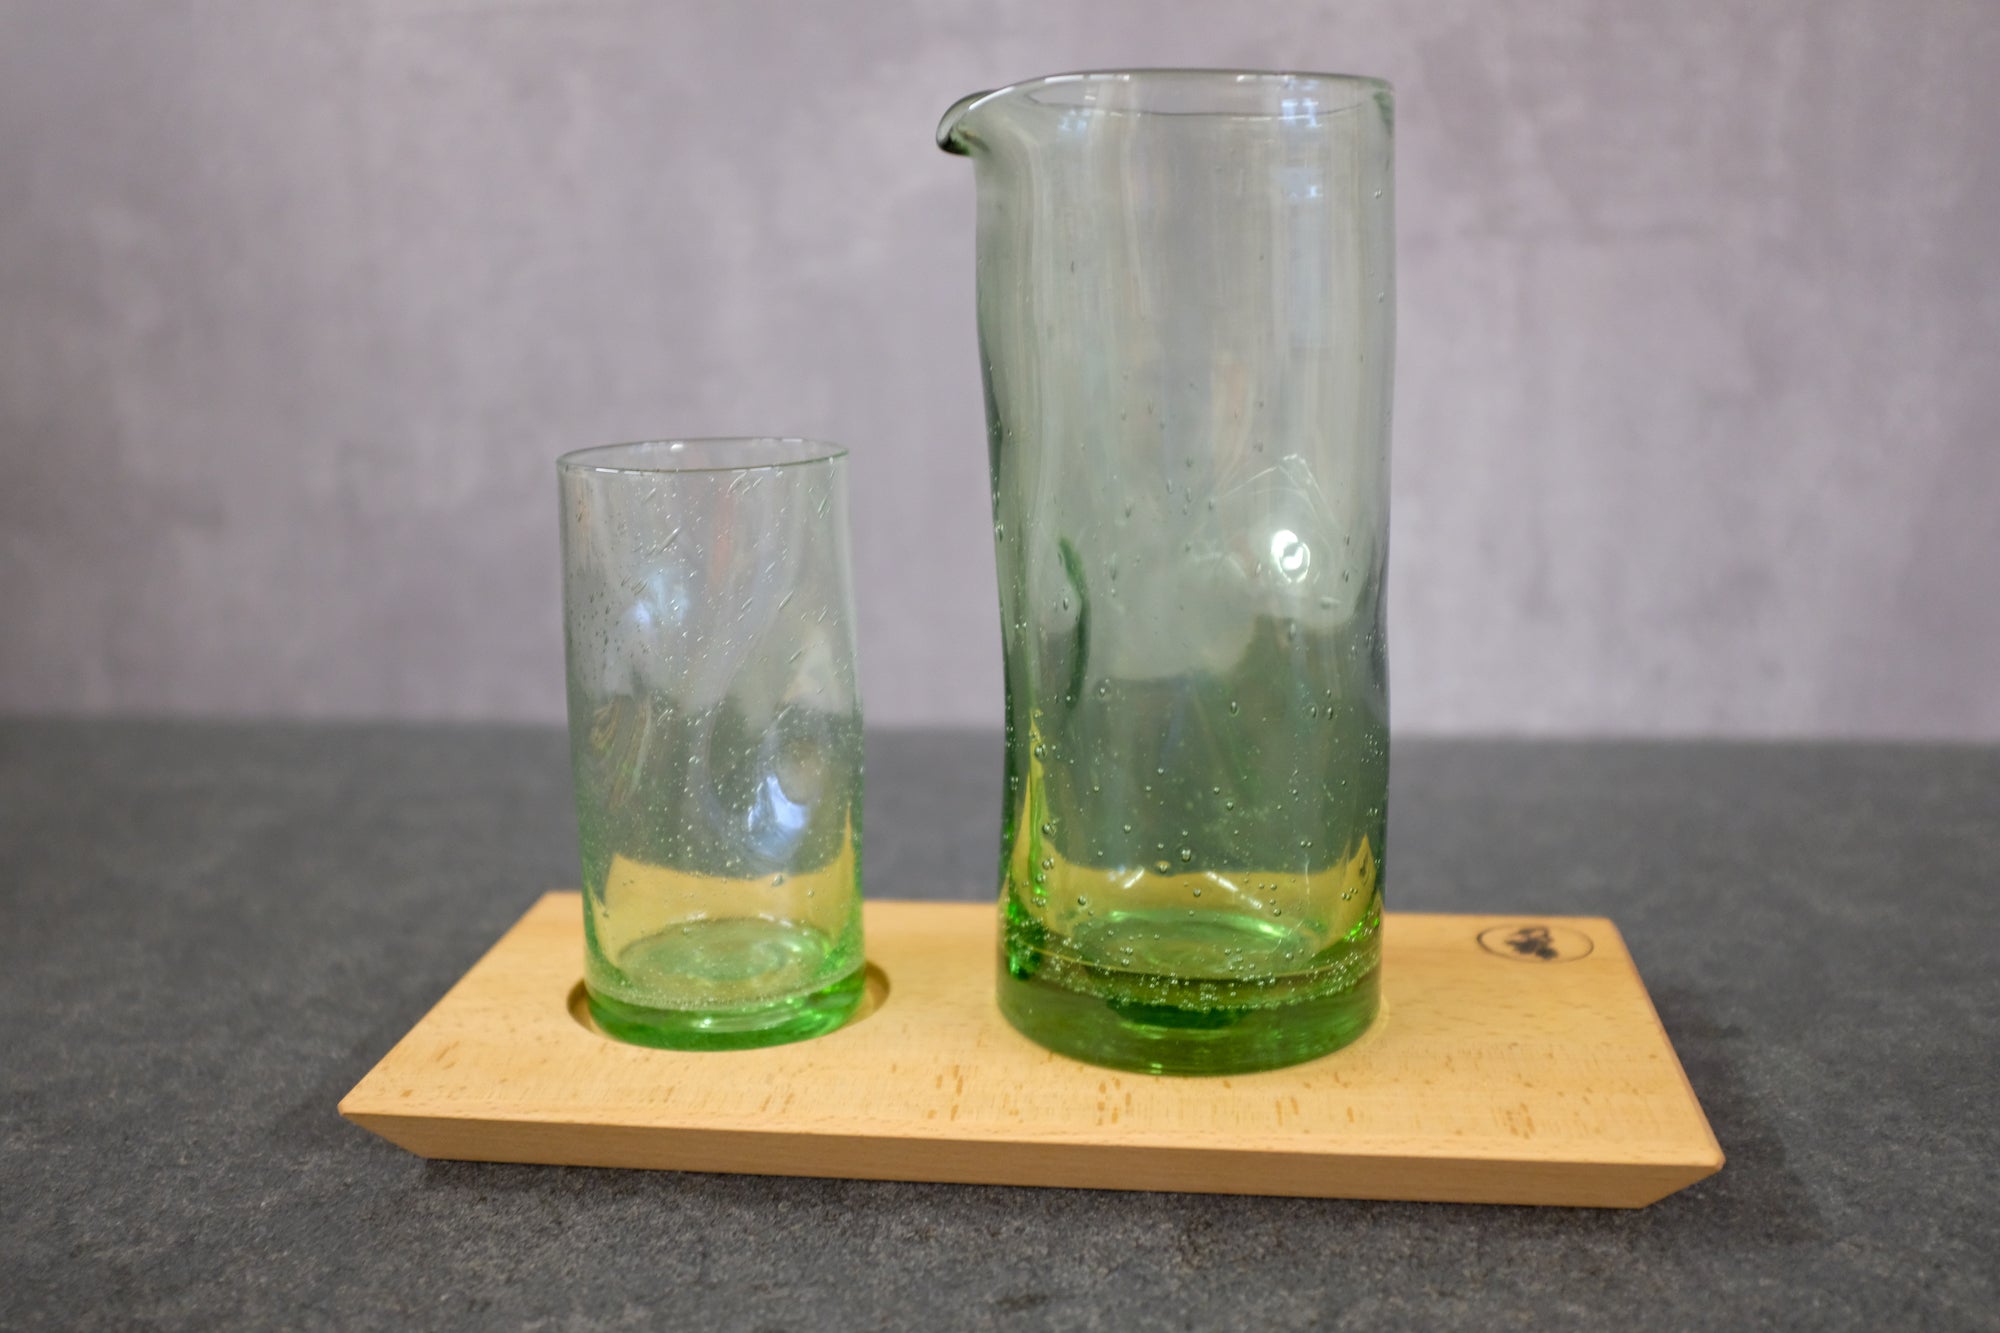 Handliches Trinkglas, 300 ml, und Wasserkrug, 1000 ml, auf einem Holztablett aus Buche massiv.